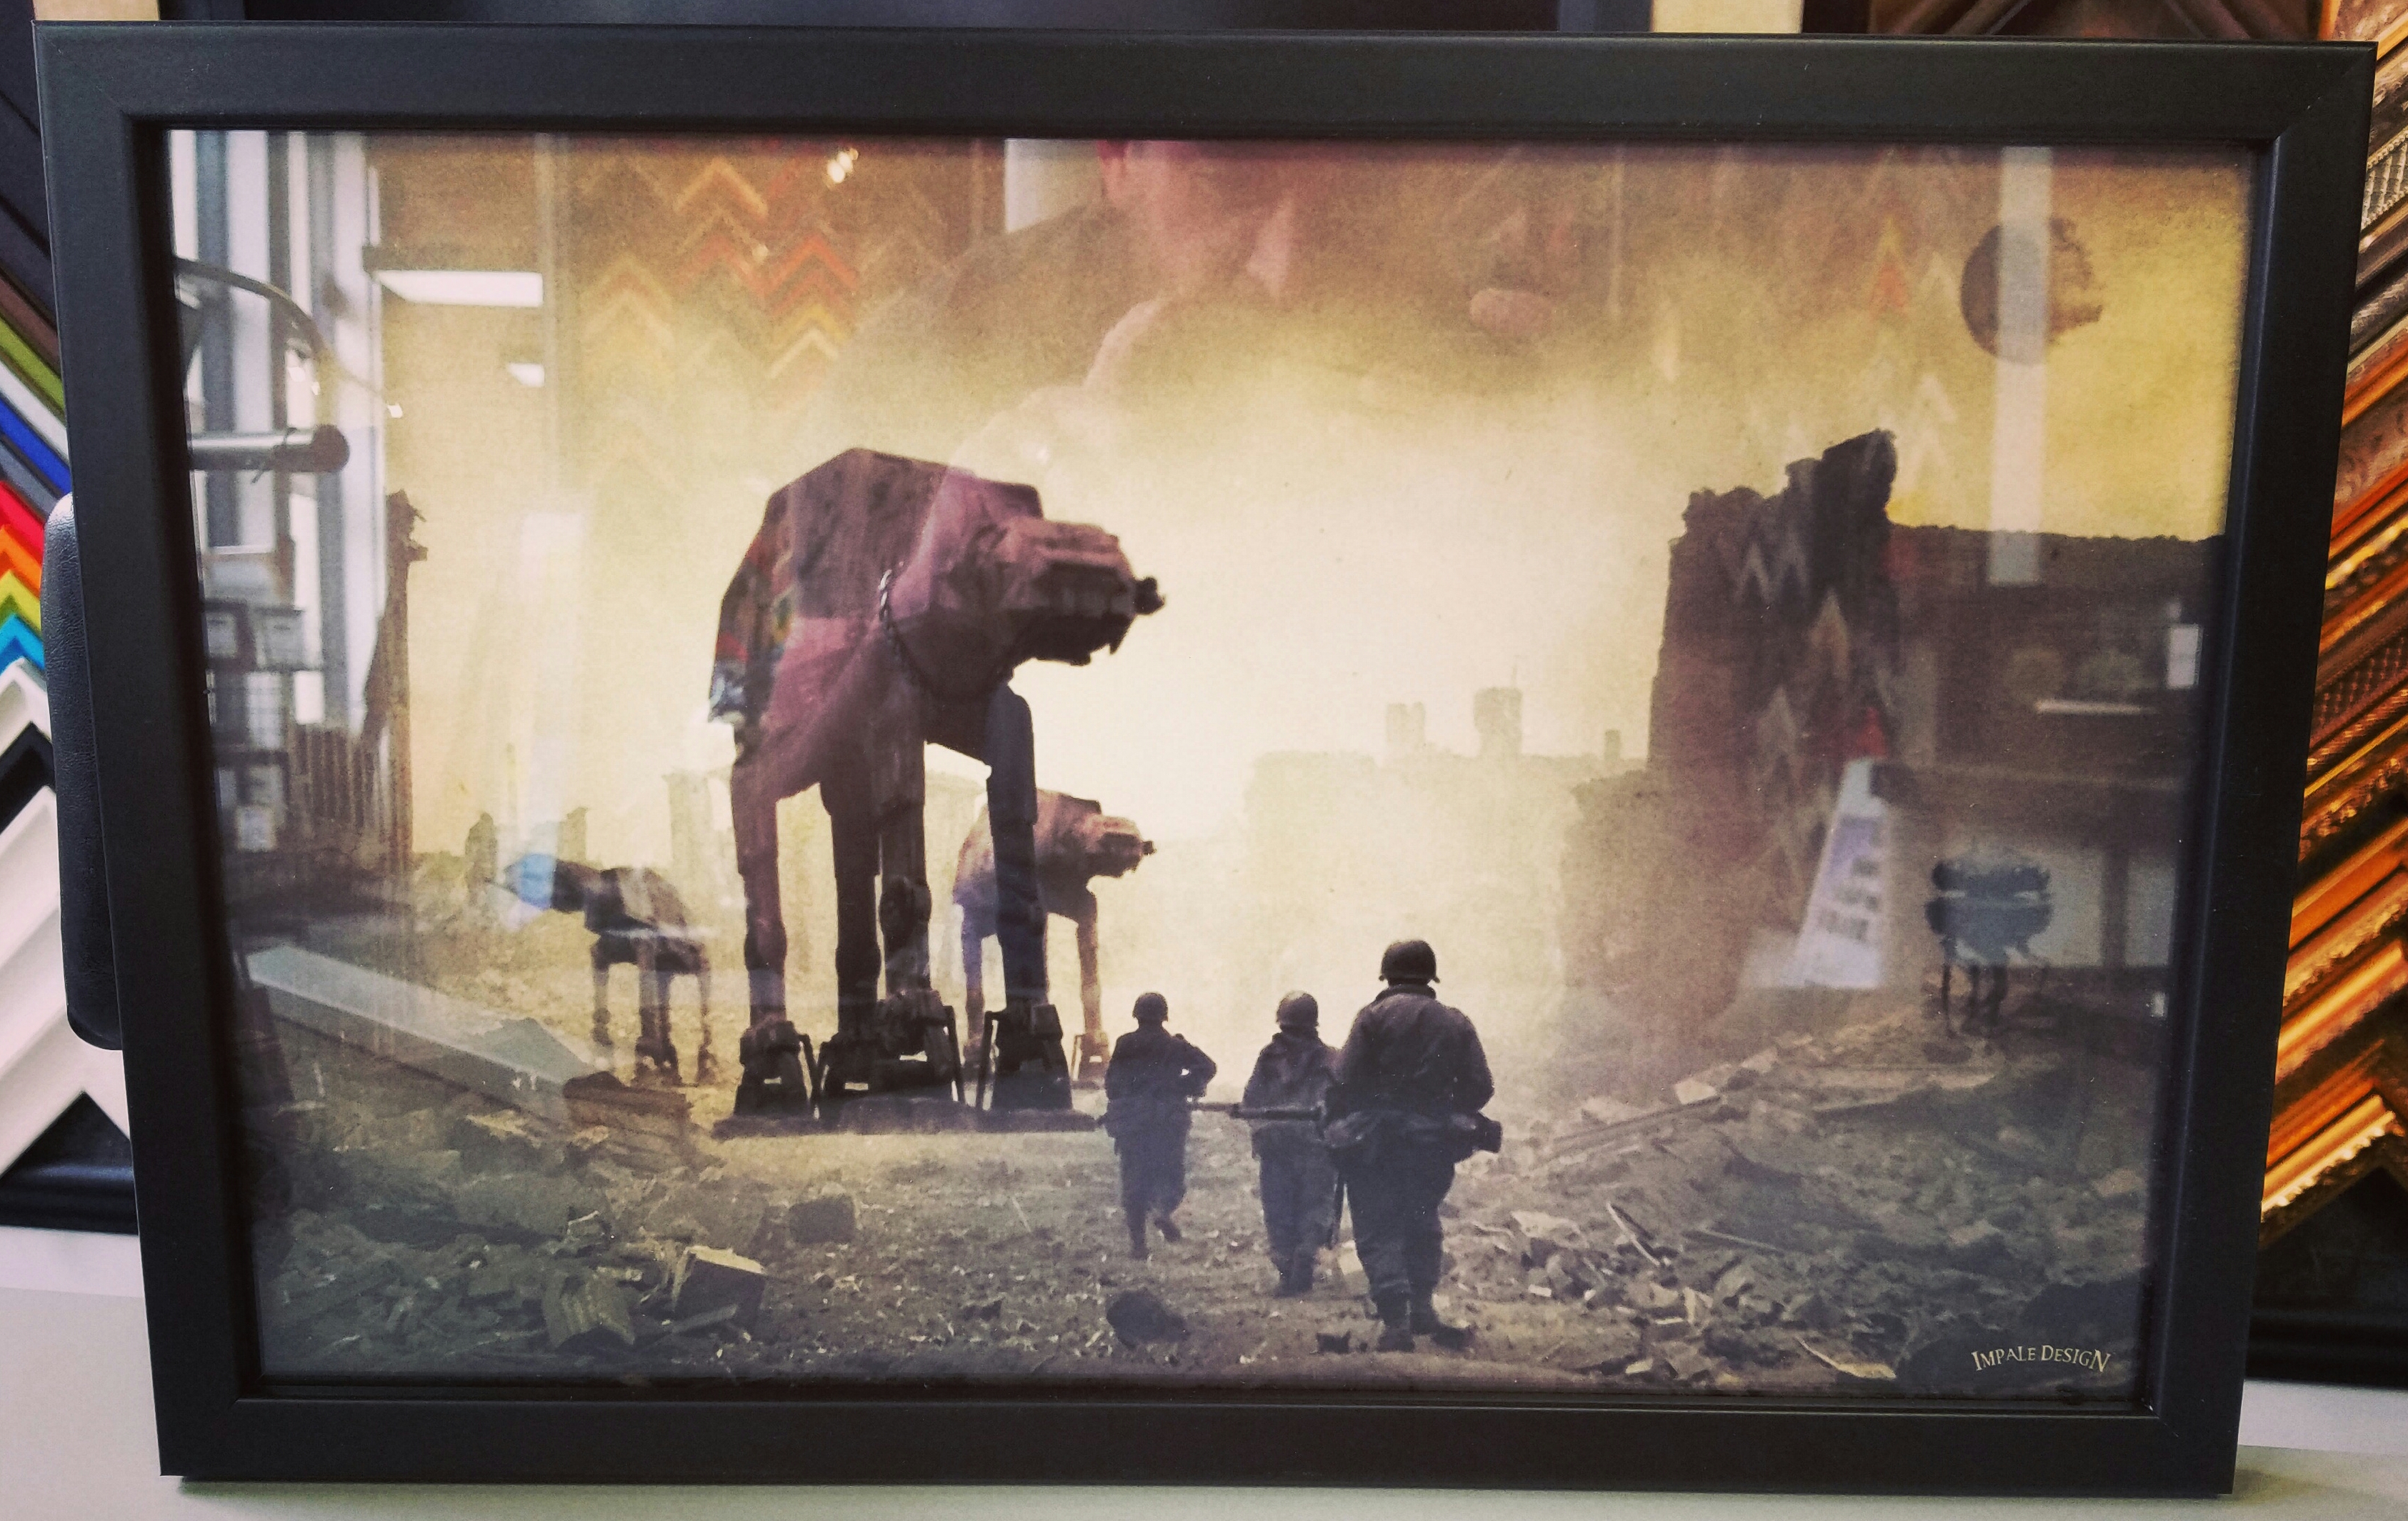 Star Wars Framed Artwork Denver